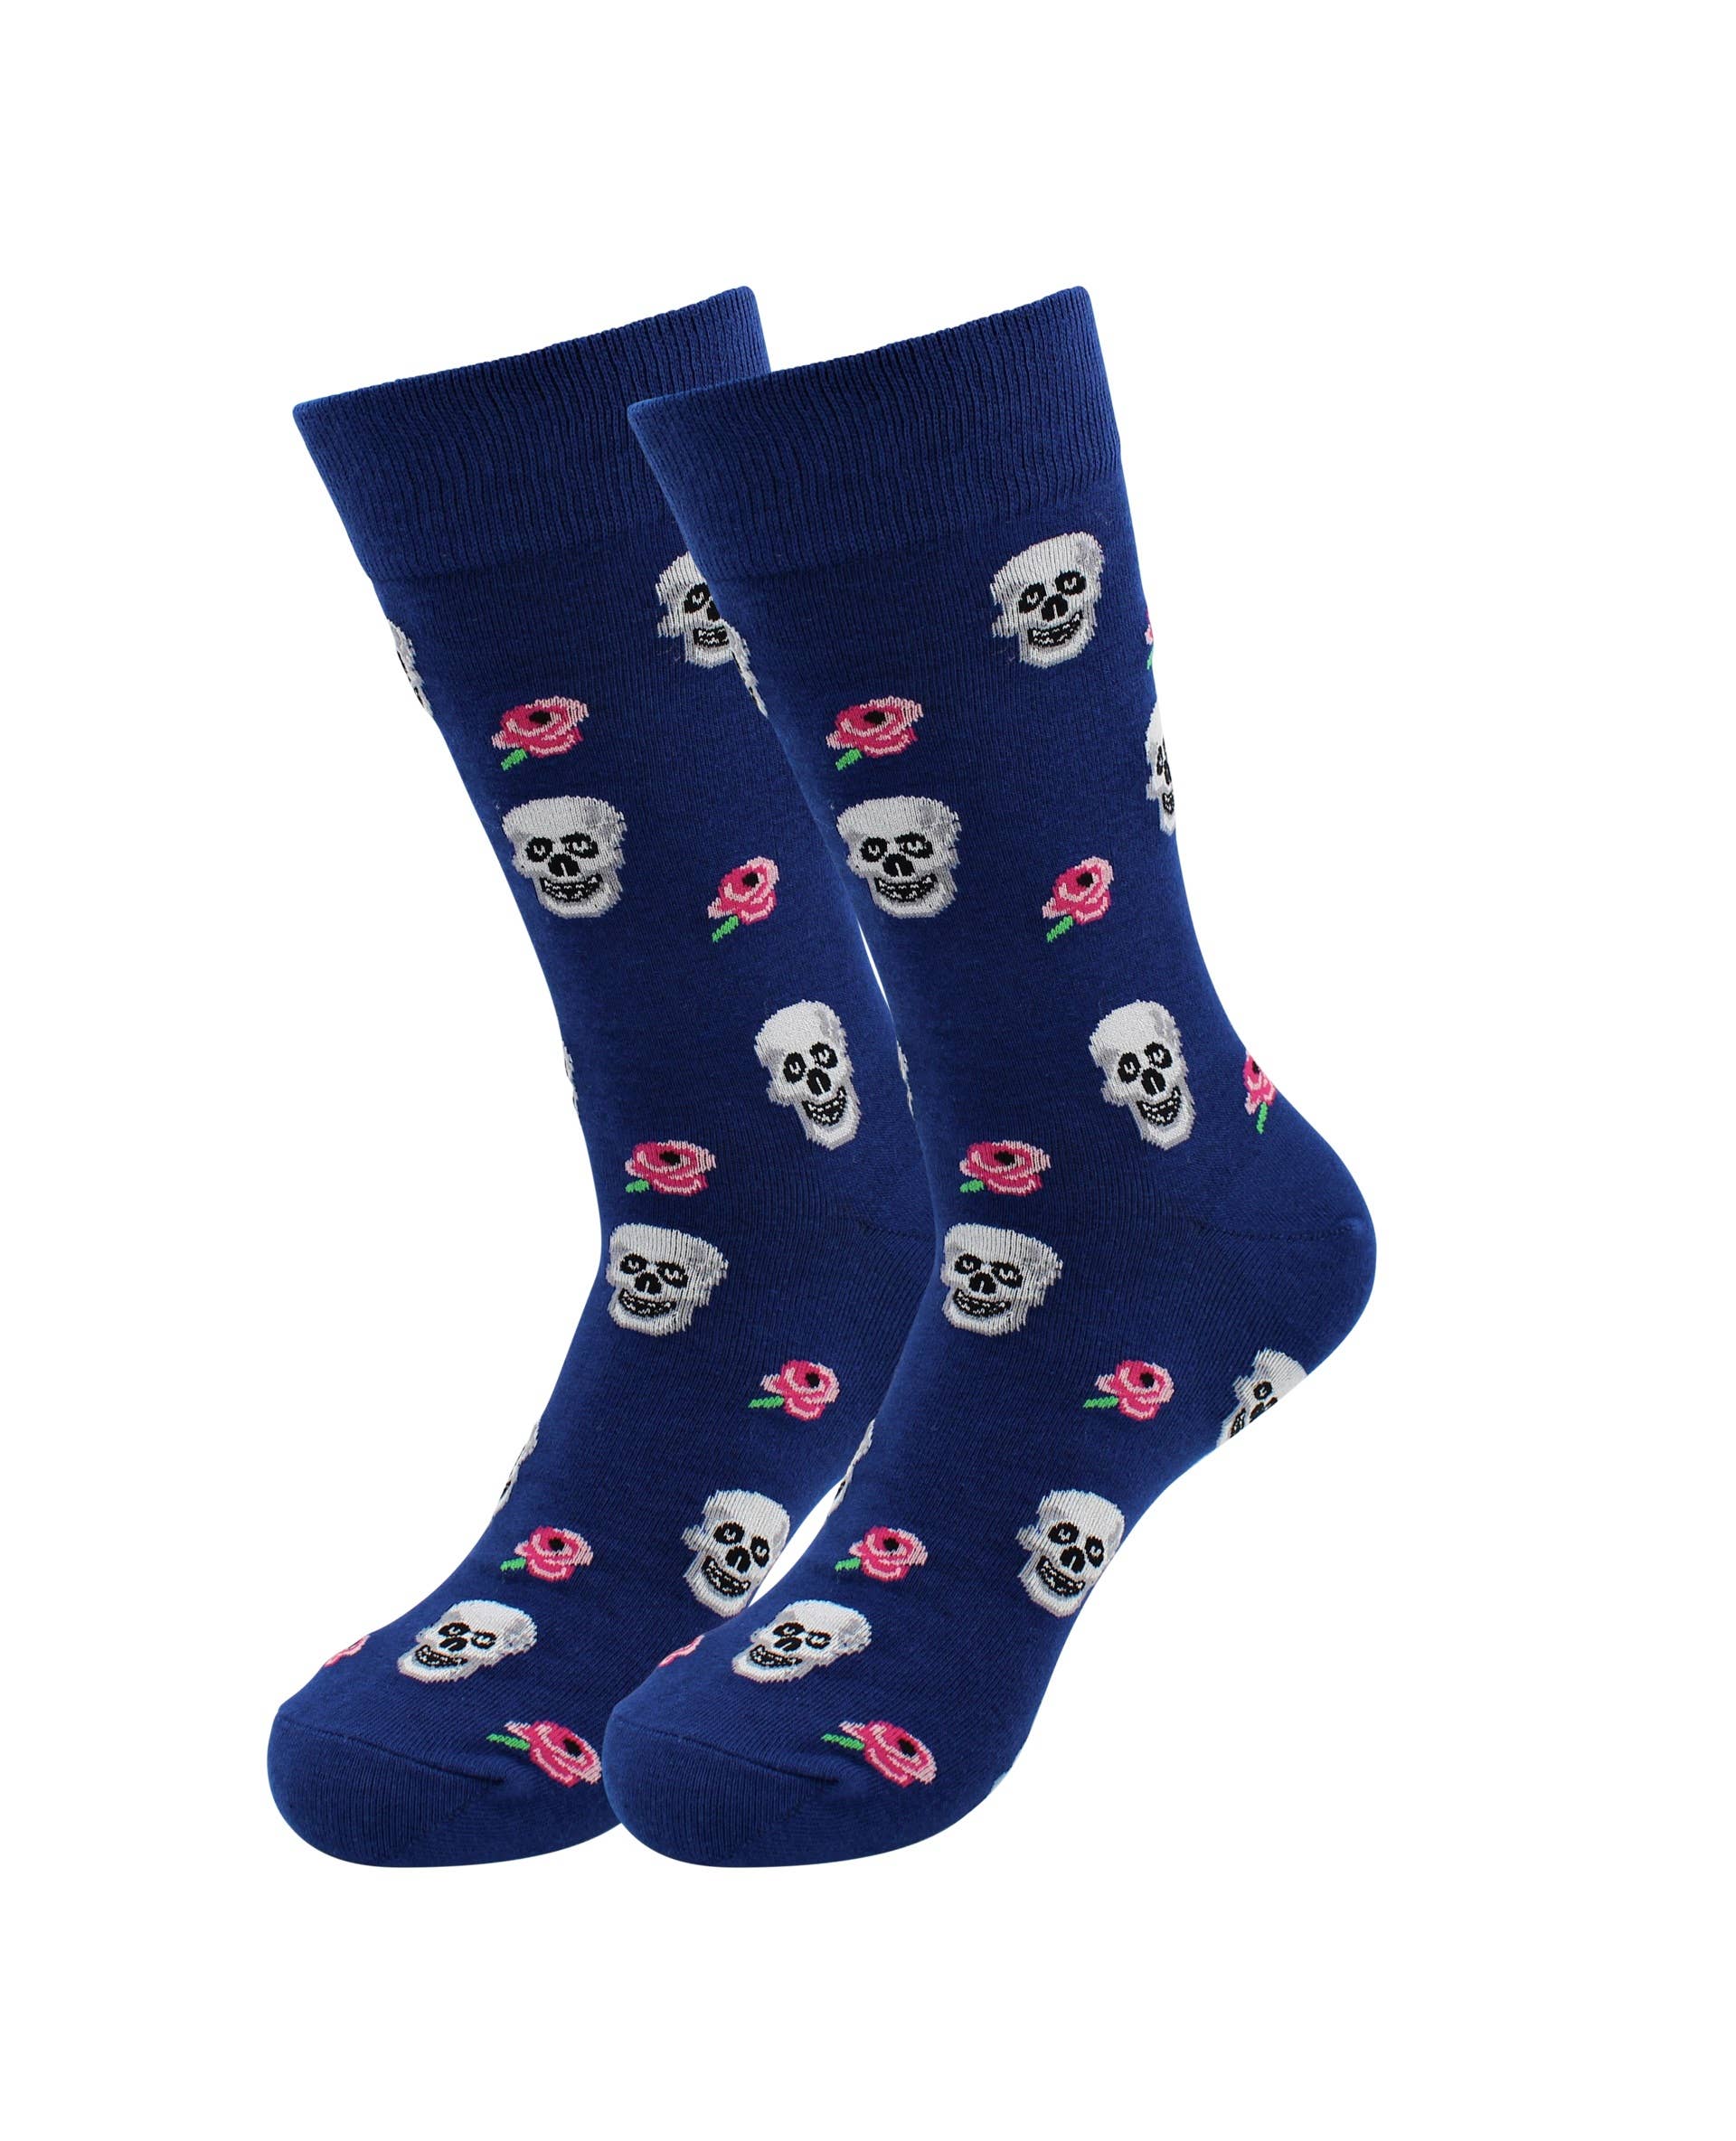 Image of Real Sic Skull & Flowers Halloween / Horror Funny Skull Socks - Dancing Skeleton